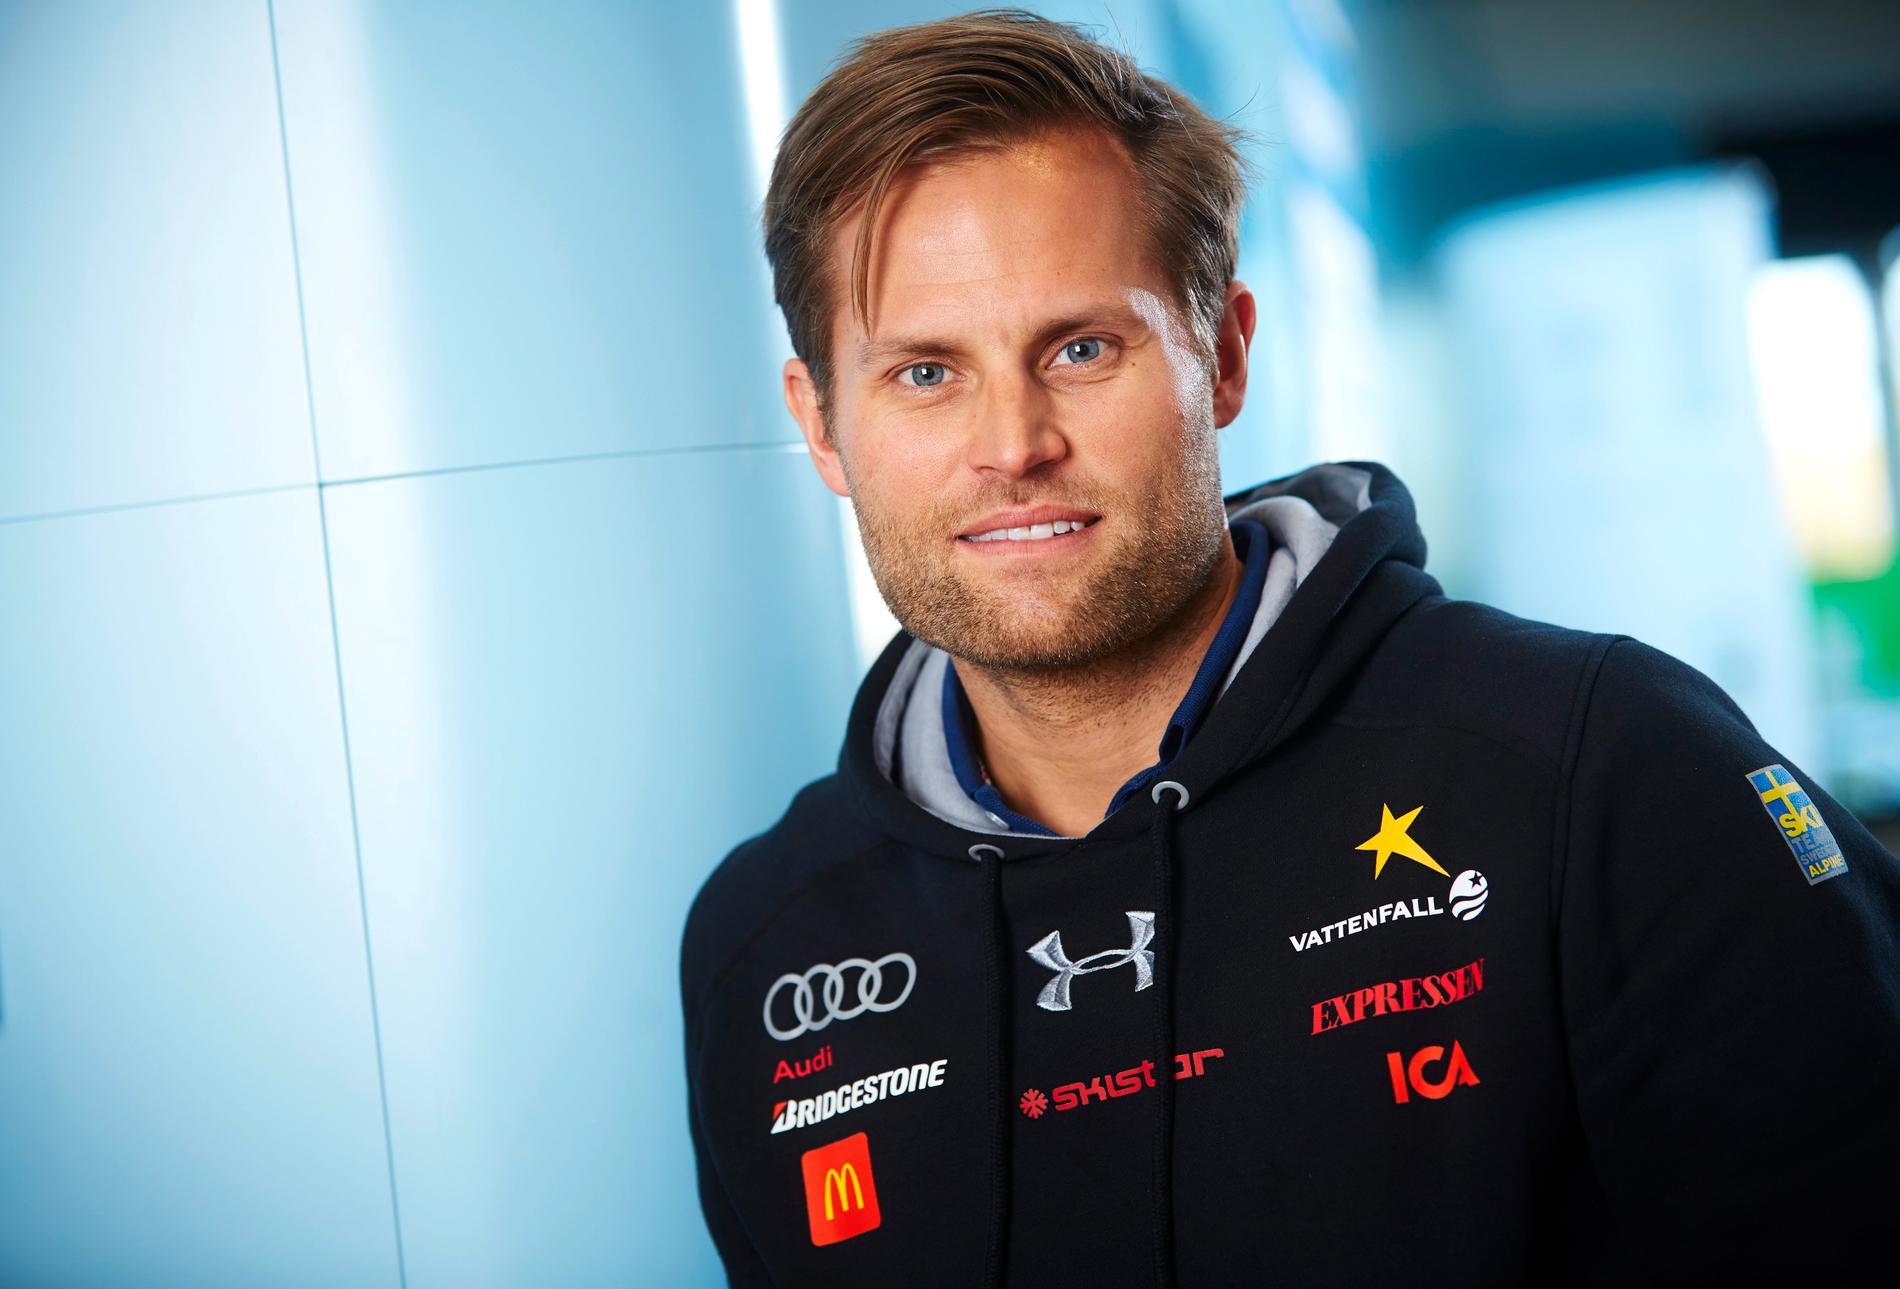 Tränaren Fredrik Steinwall lämnar alpina landslaget efter tio år.